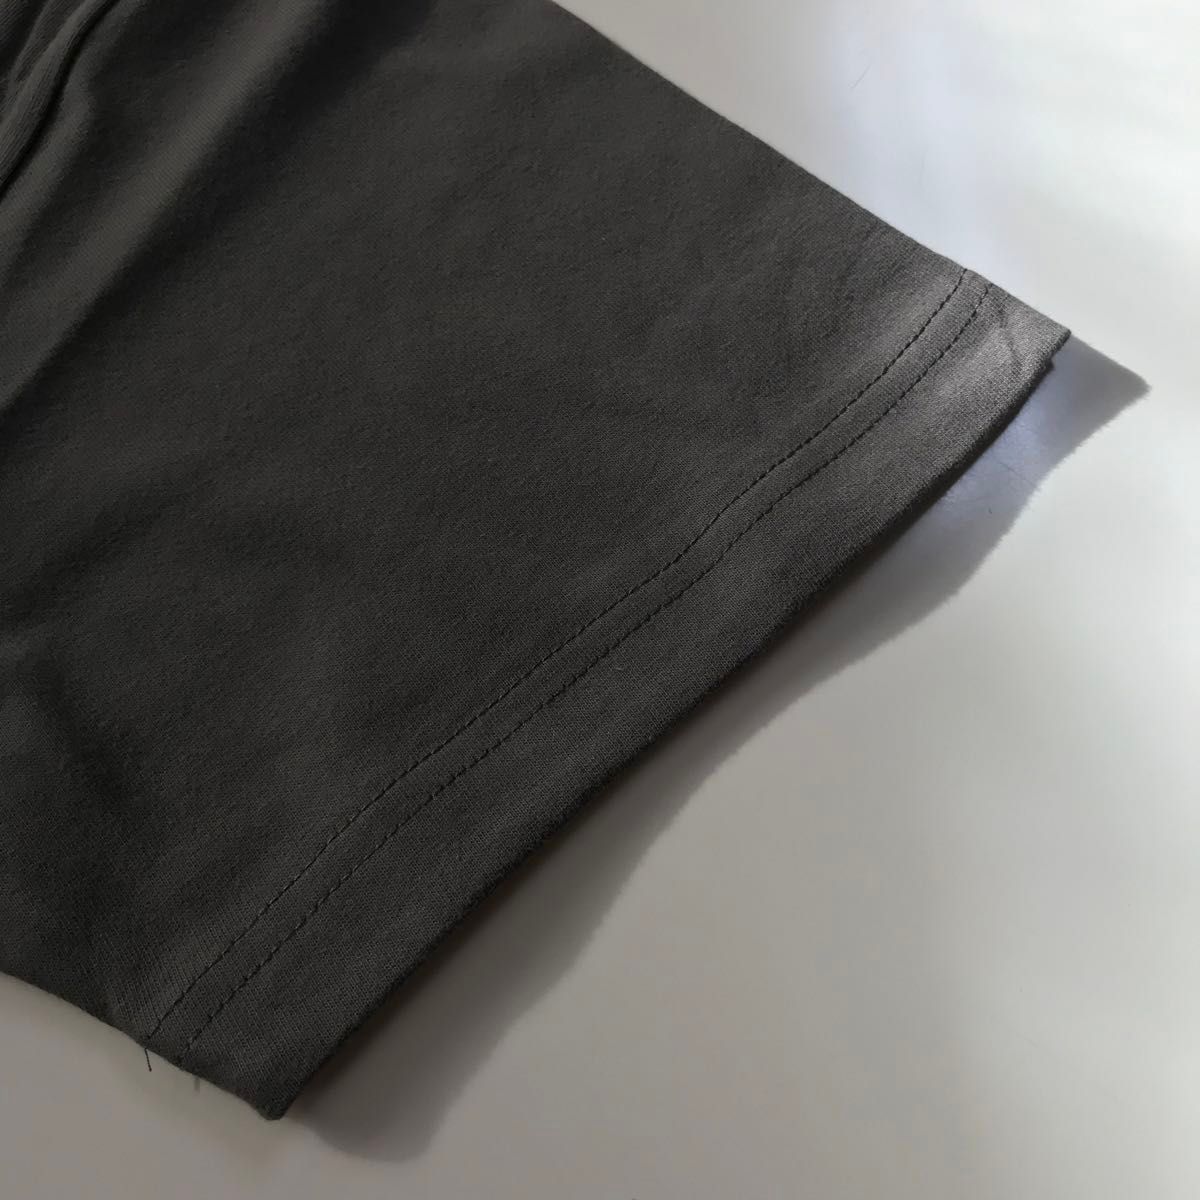 Tシャツ 半袖 5.6オンス ハイクオリティー【5001-01】XL ヘイジーブラック 綿100%